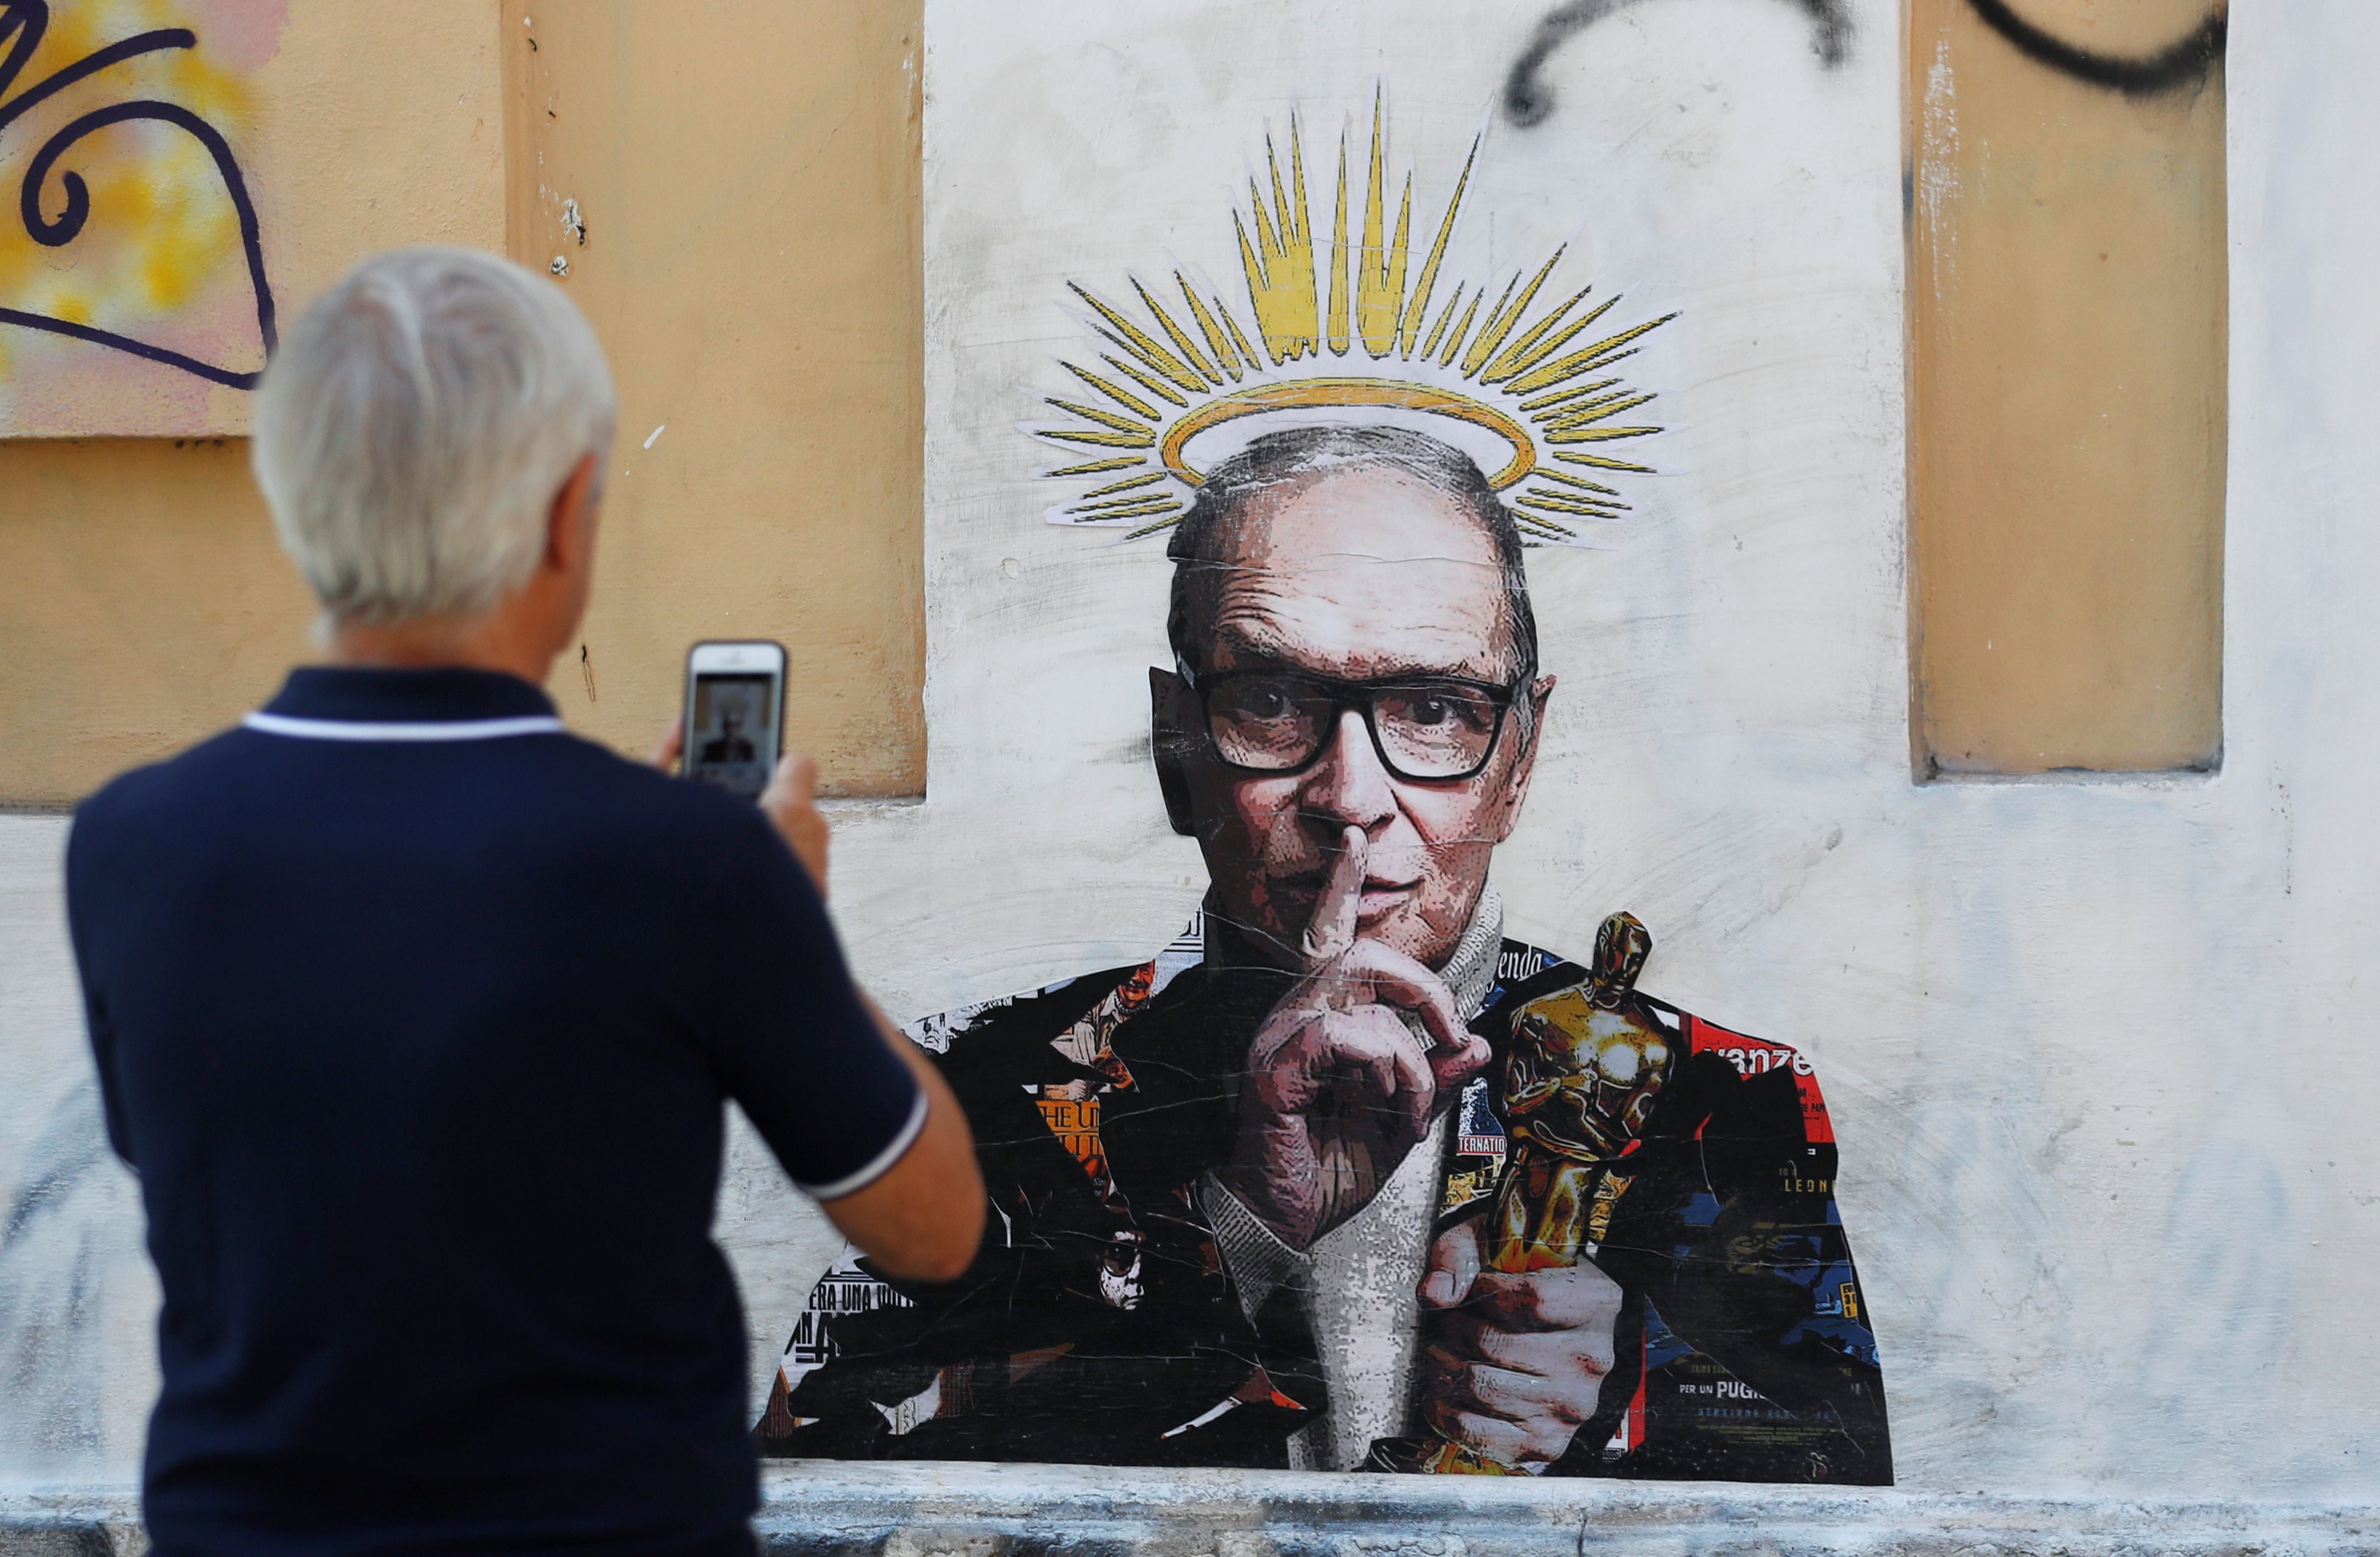 Un hombre toma una fotografía de un mural dedicado al compositor italiano Ennio Morricone, quien murió a la edad de 91 años, en 2020 (REUTERS/Yara Nardi)
